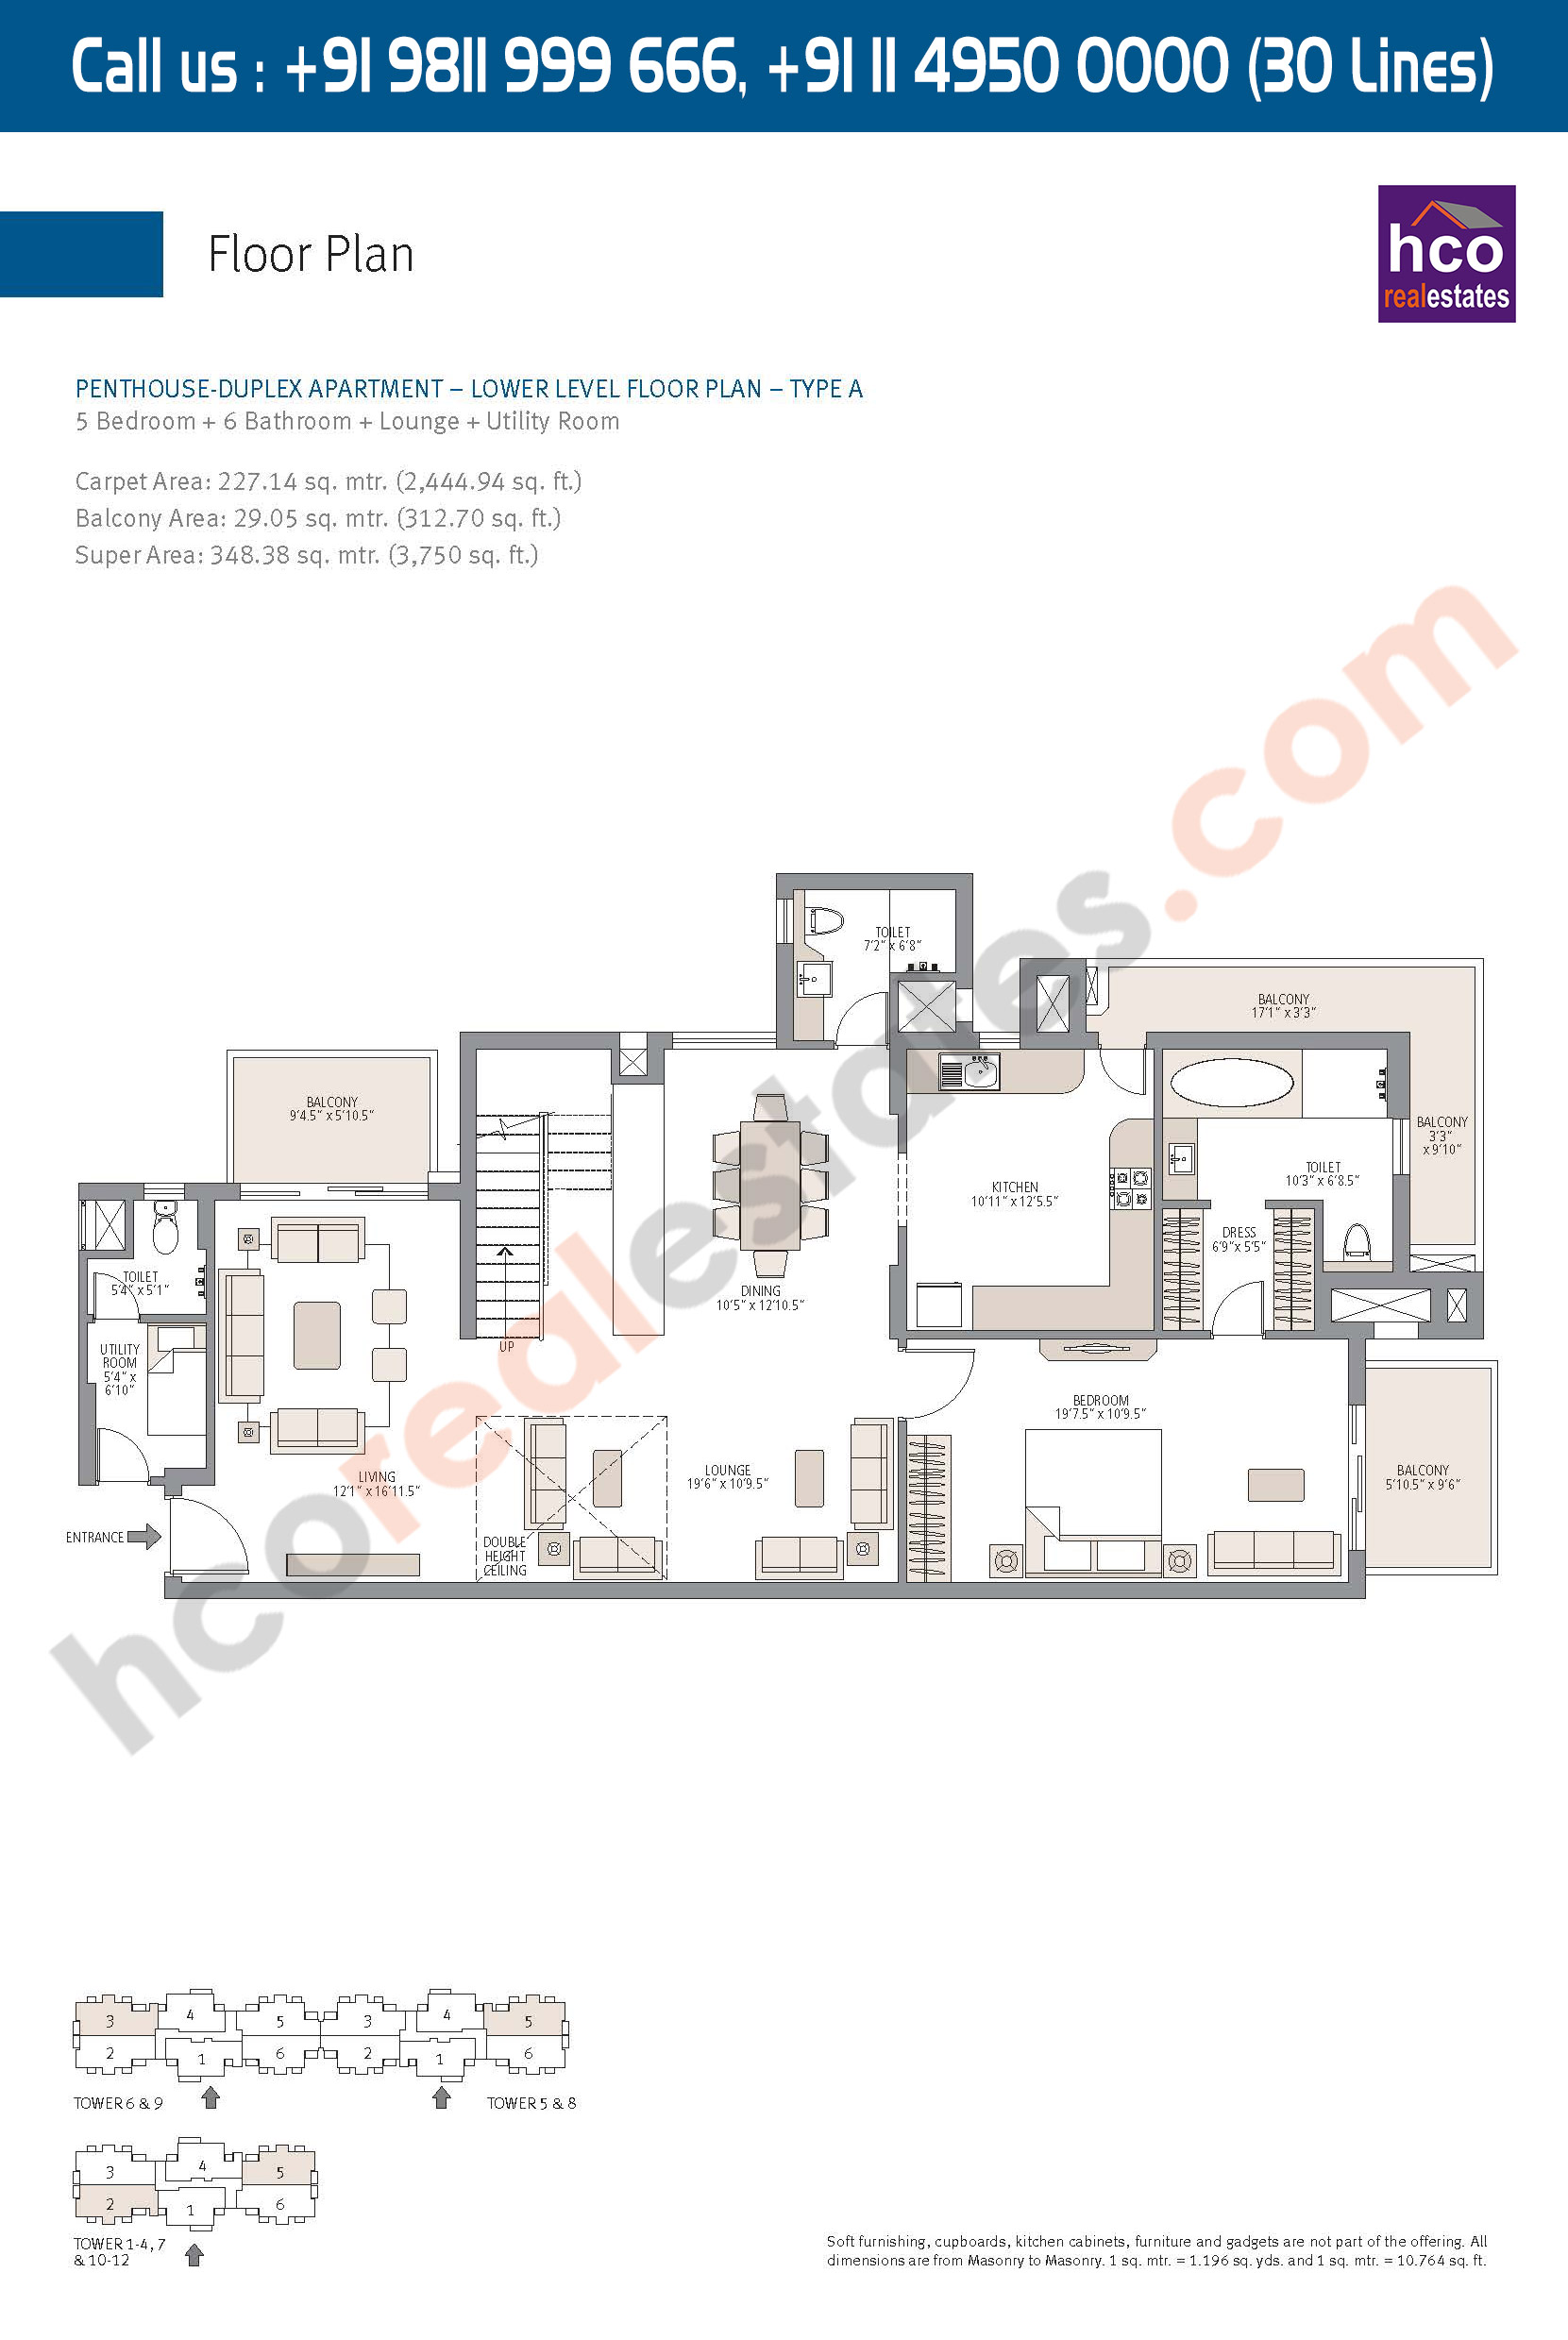 Lower Level Floor Plan, Penthouse Duplex, Apartment Carpet, Area : 2445 Sq. Ft